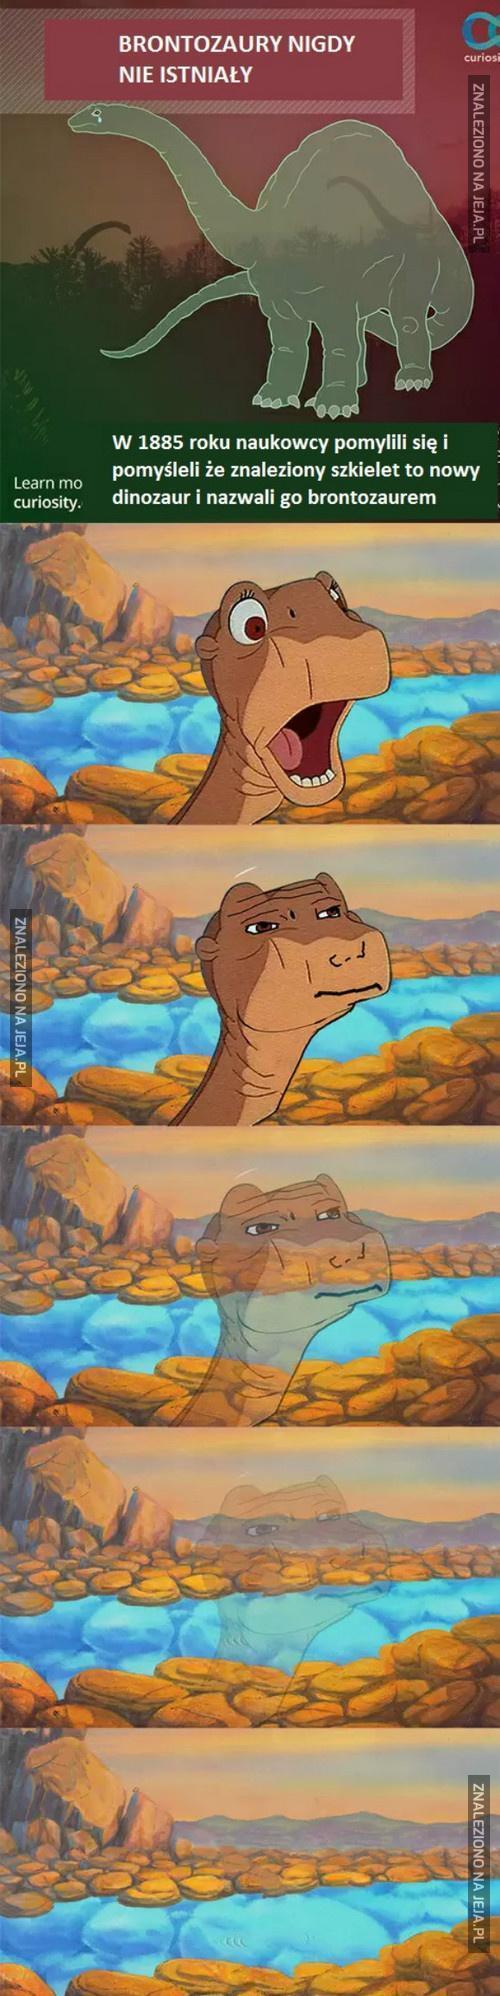 Brontozaury nigdy nie istniały